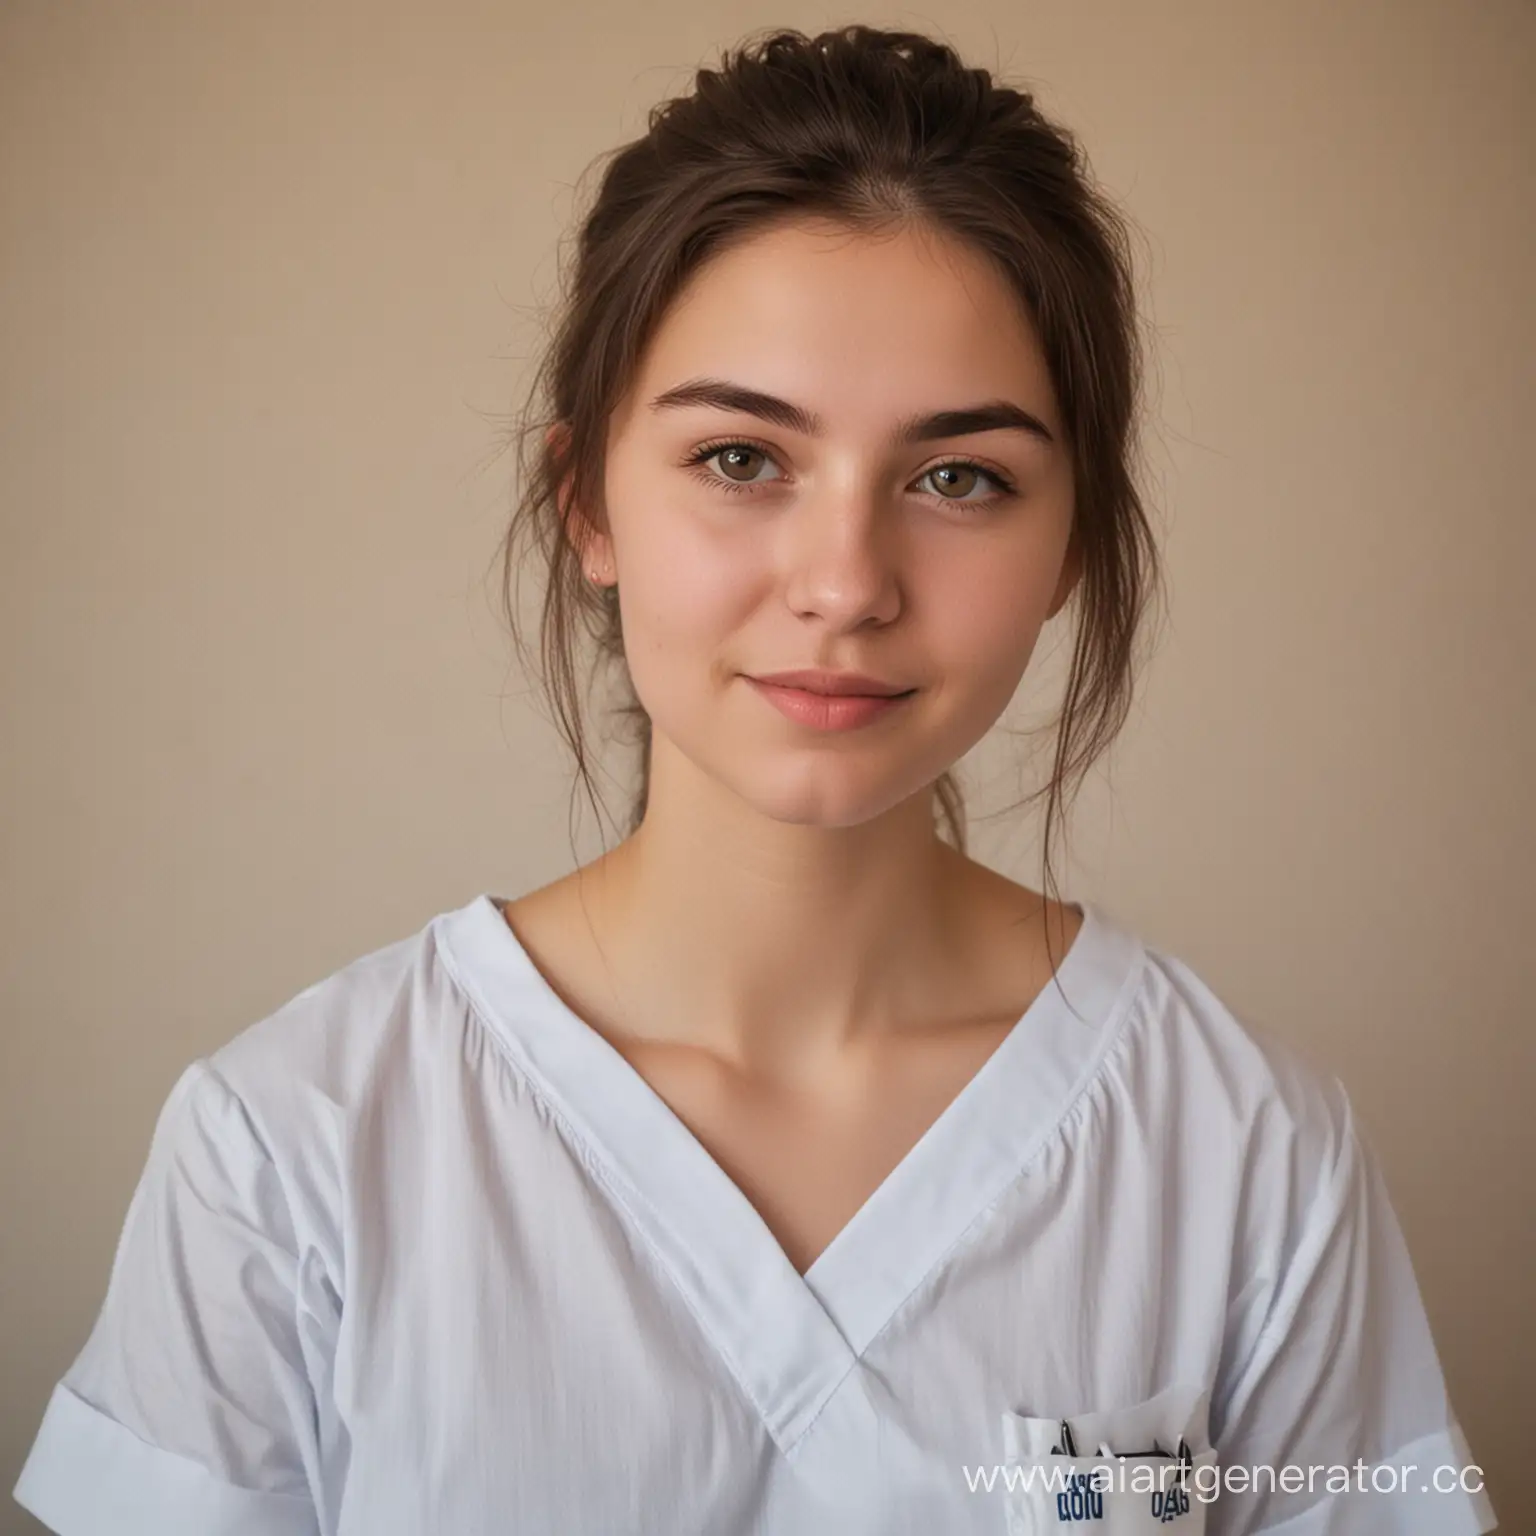 Елена, 19 лет, учится в колледже на медсестру